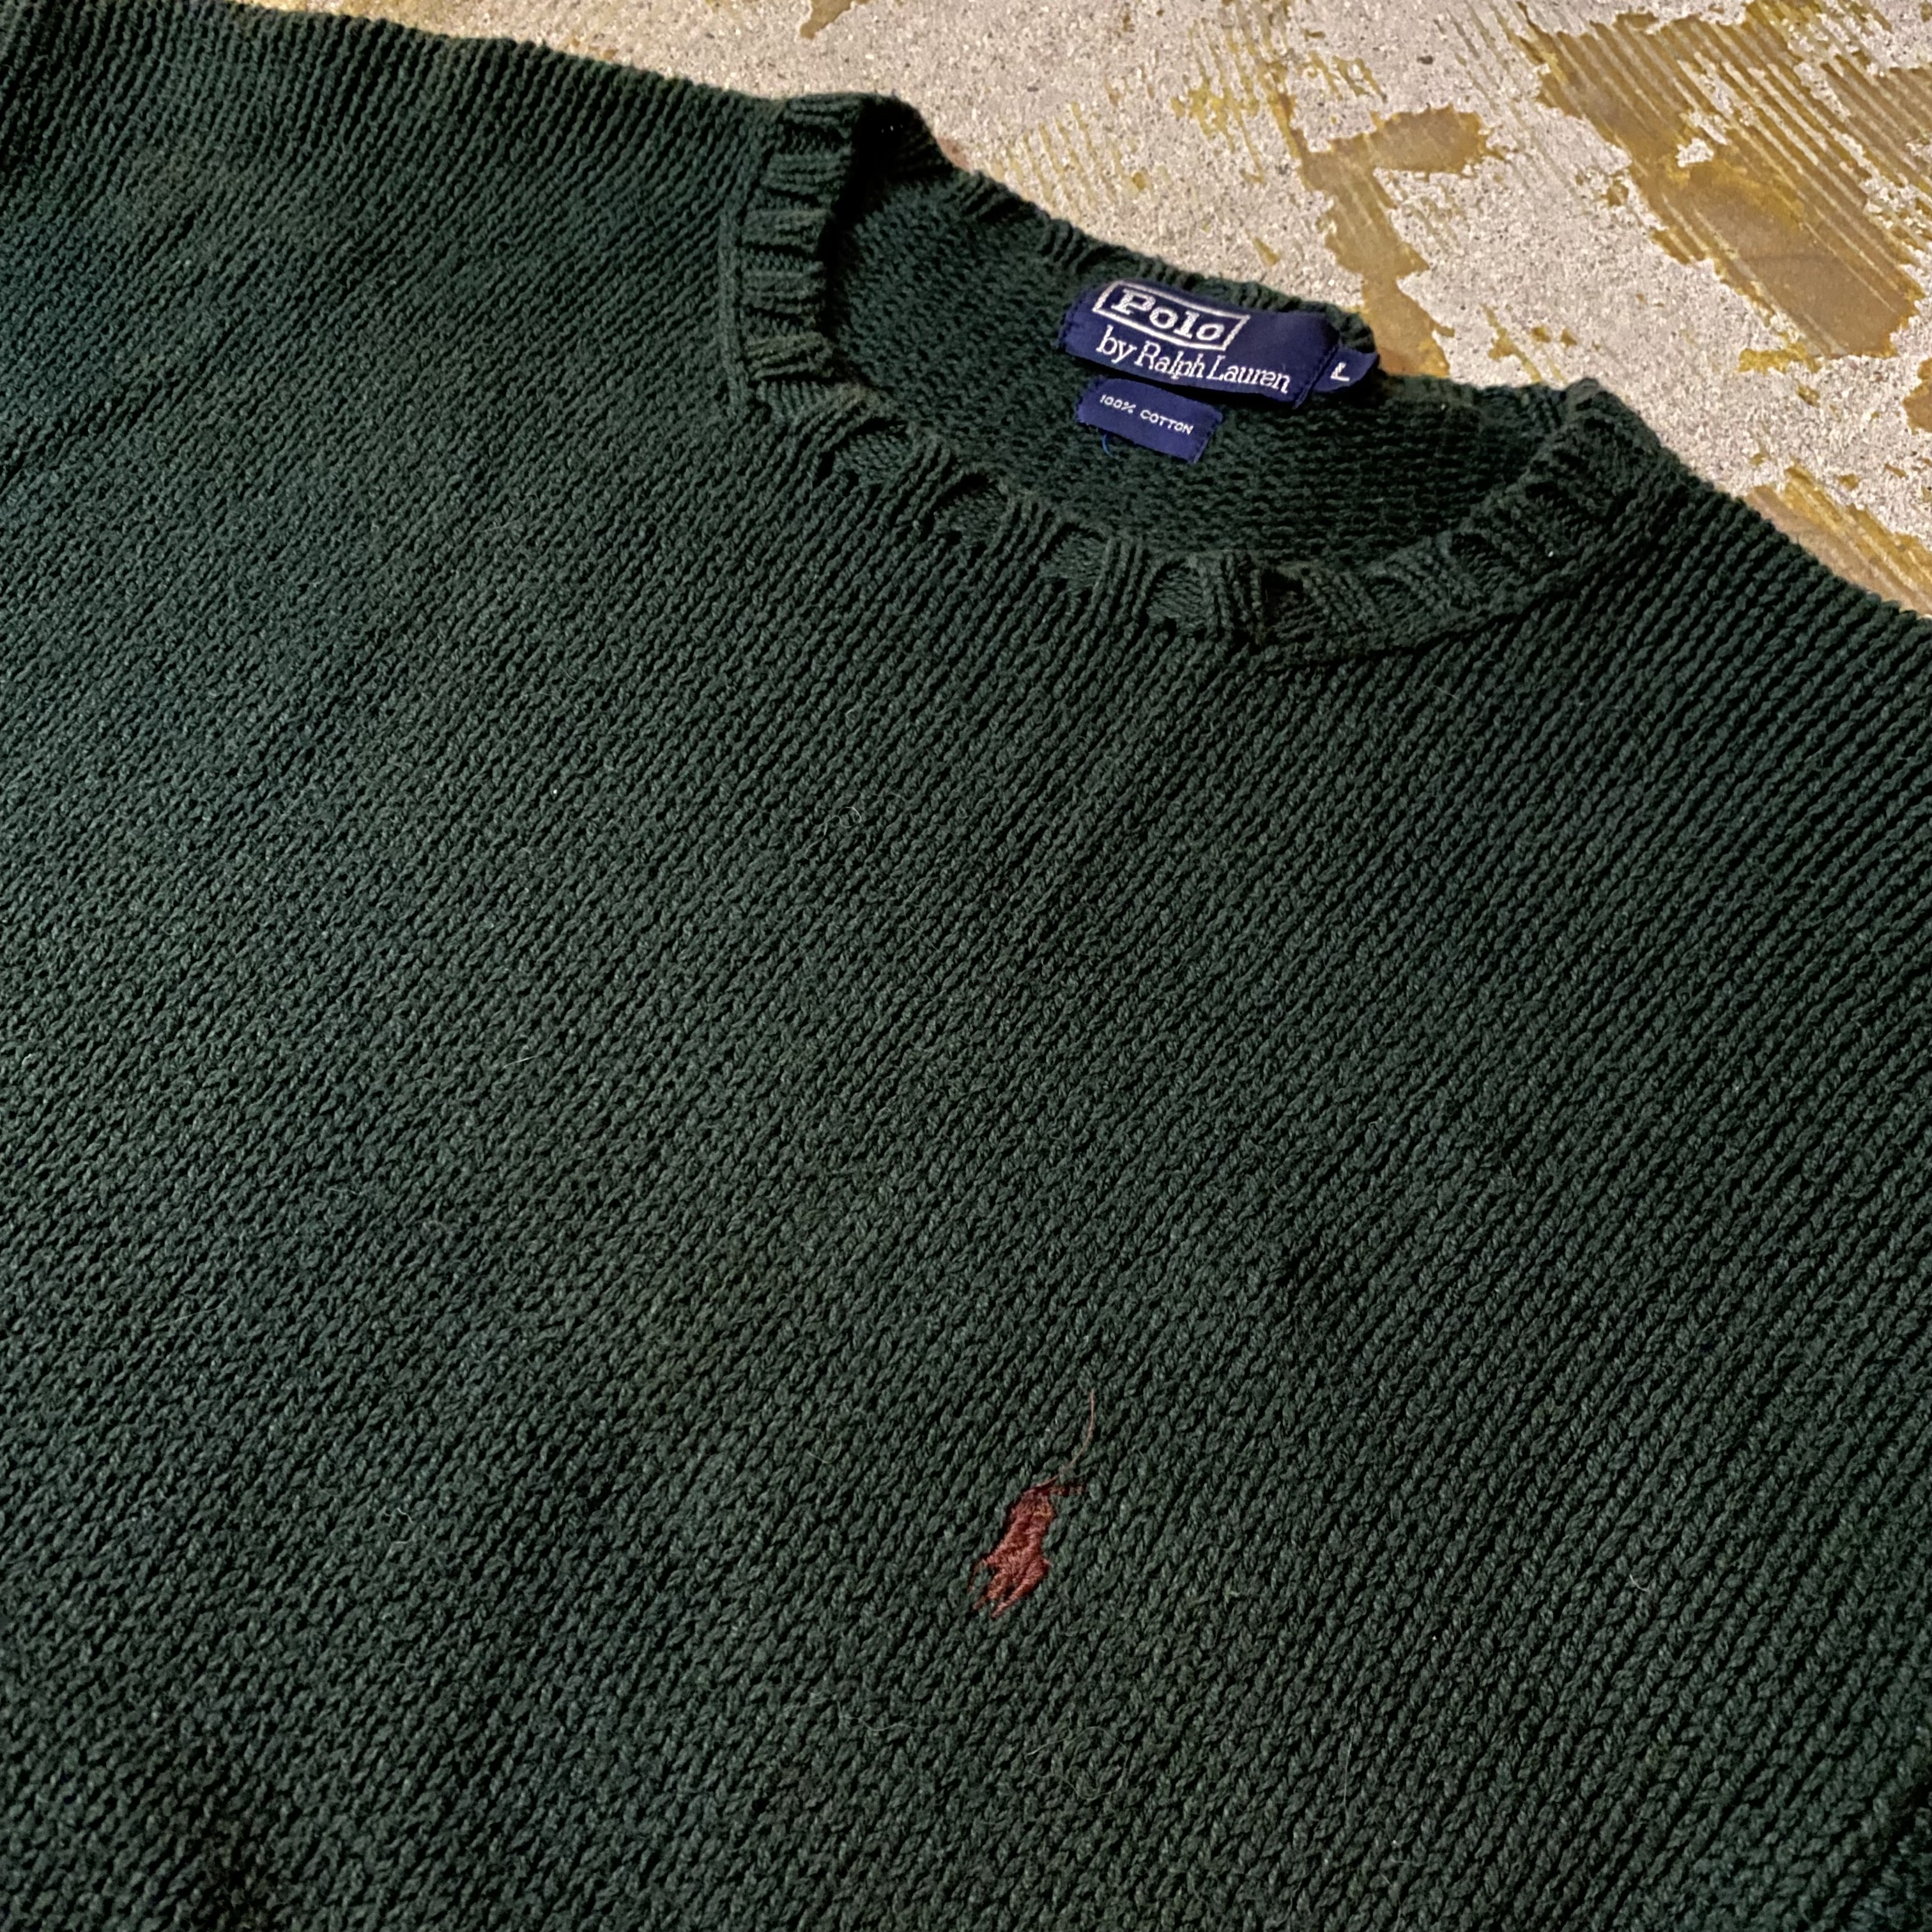 Polo Ralph Lauren crew neck cotton knit